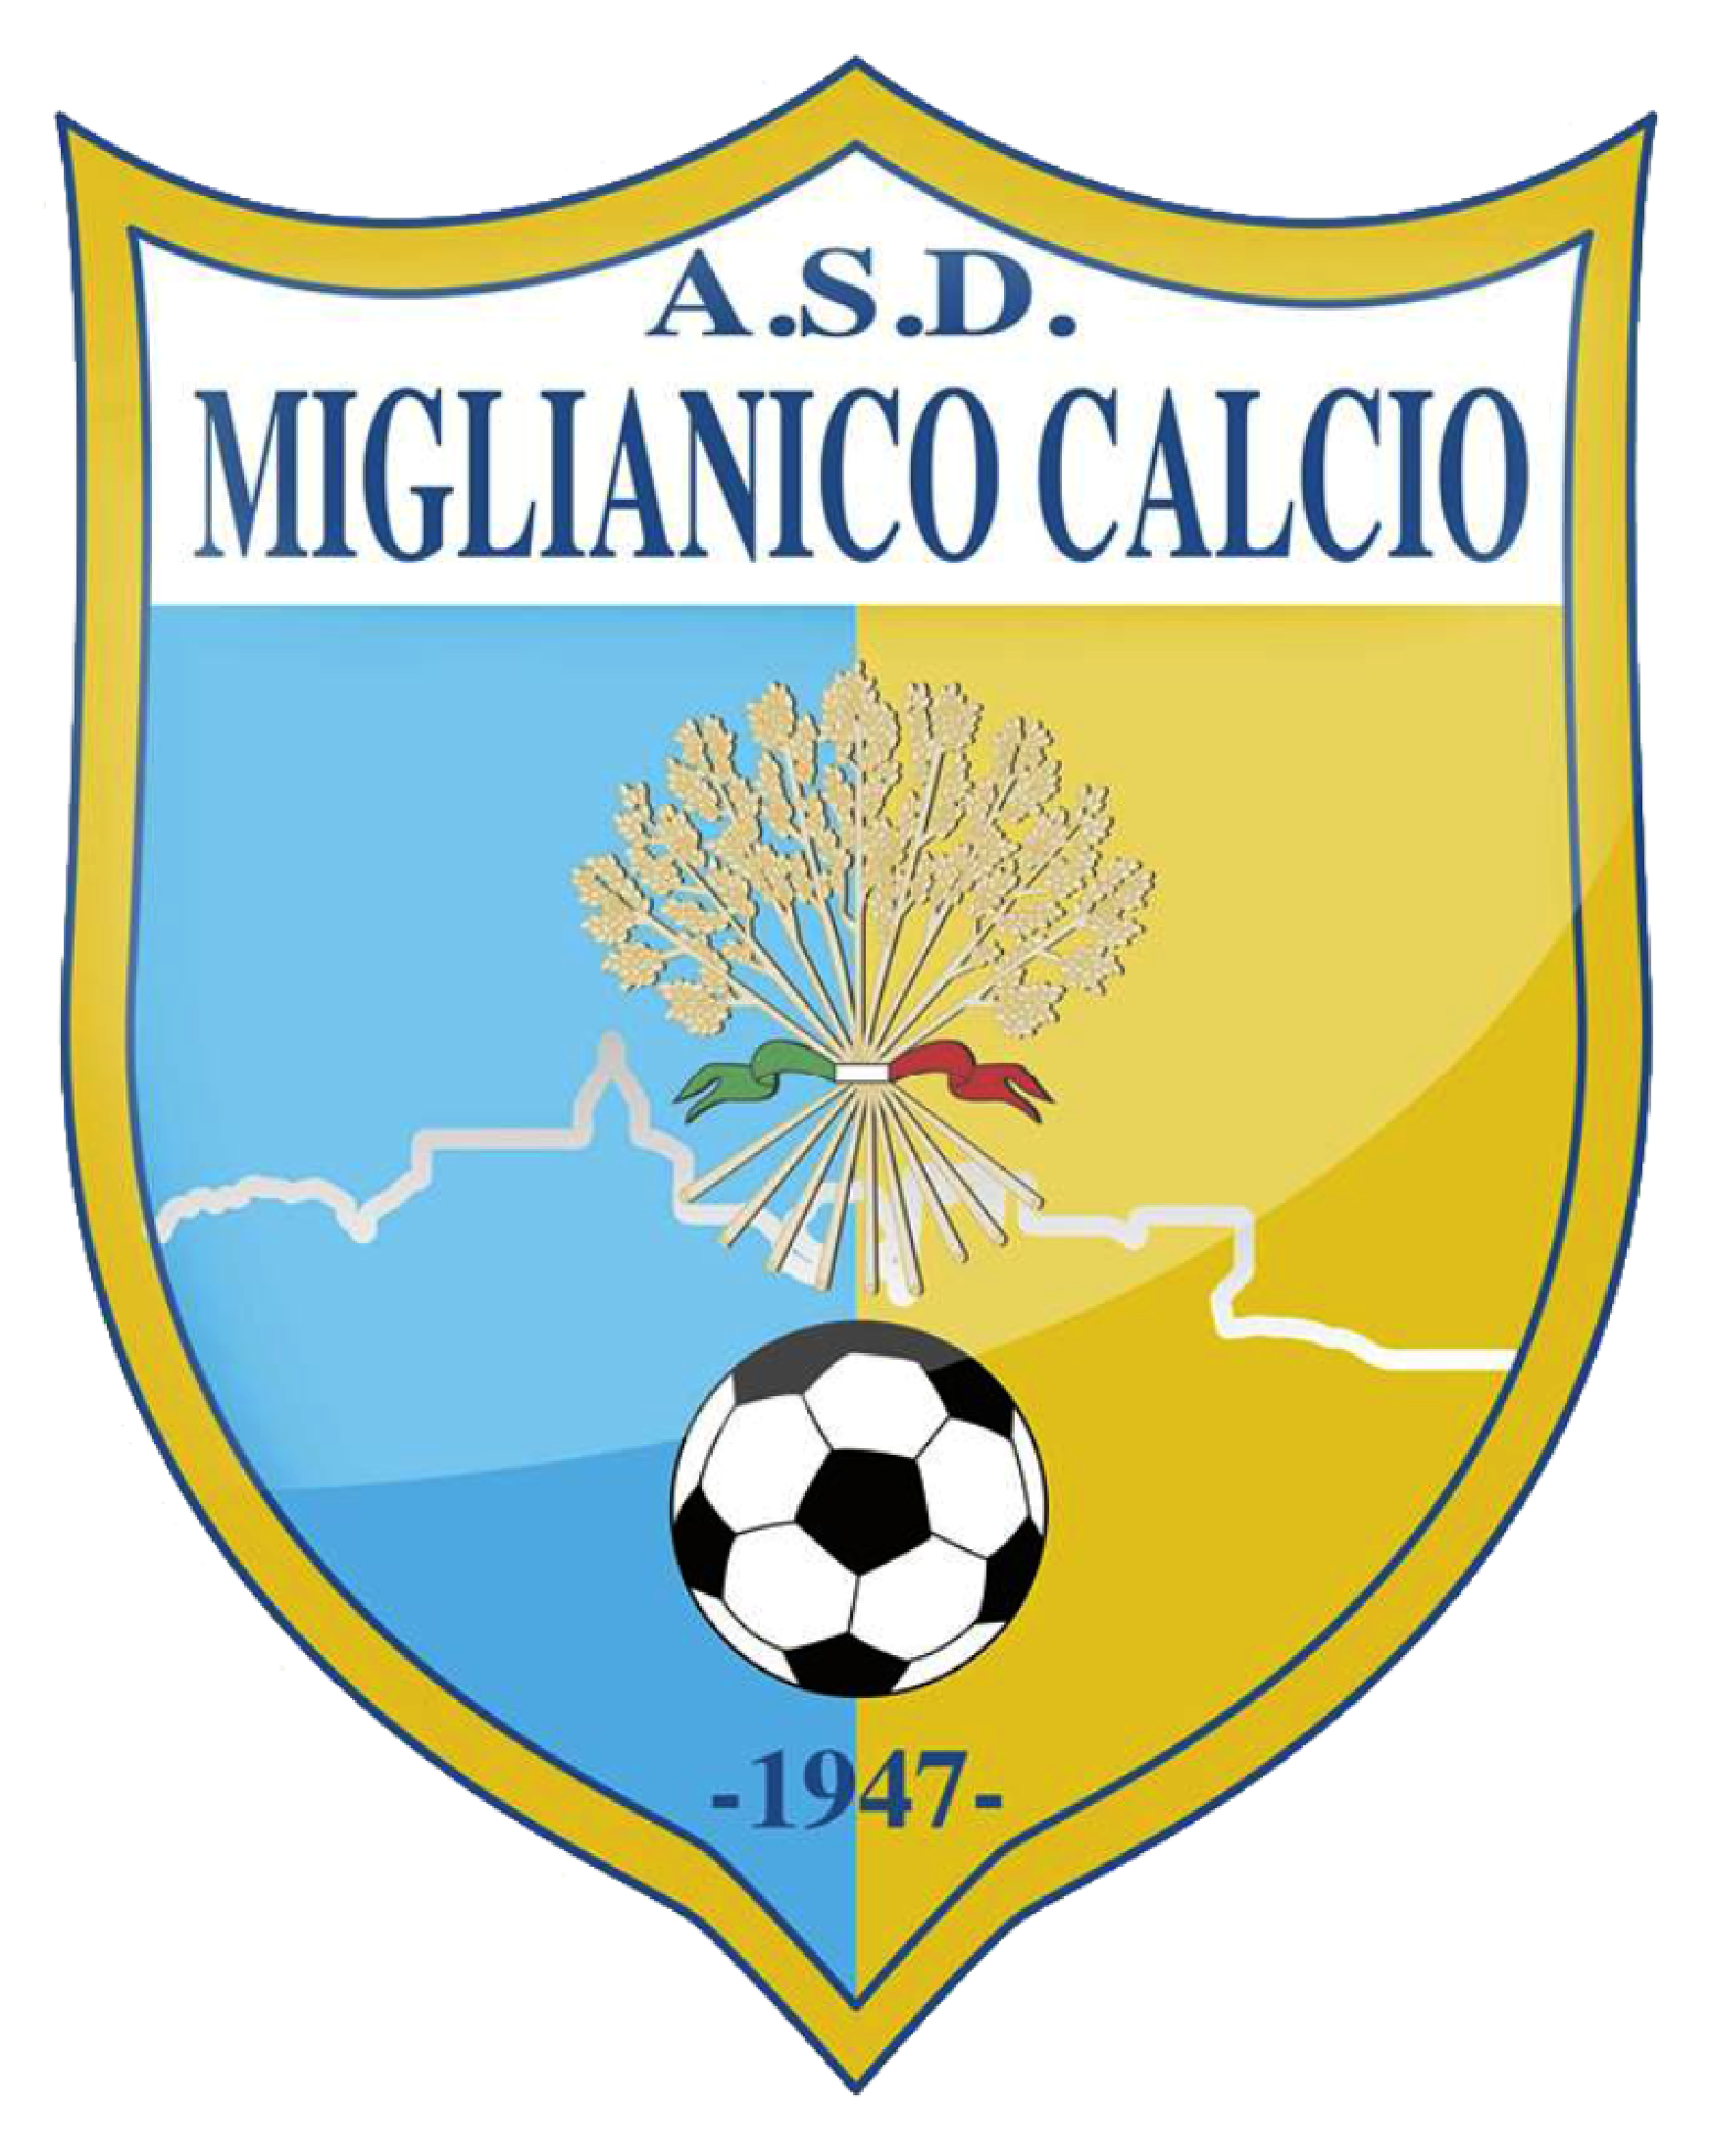 www.miglianicocalcio.it